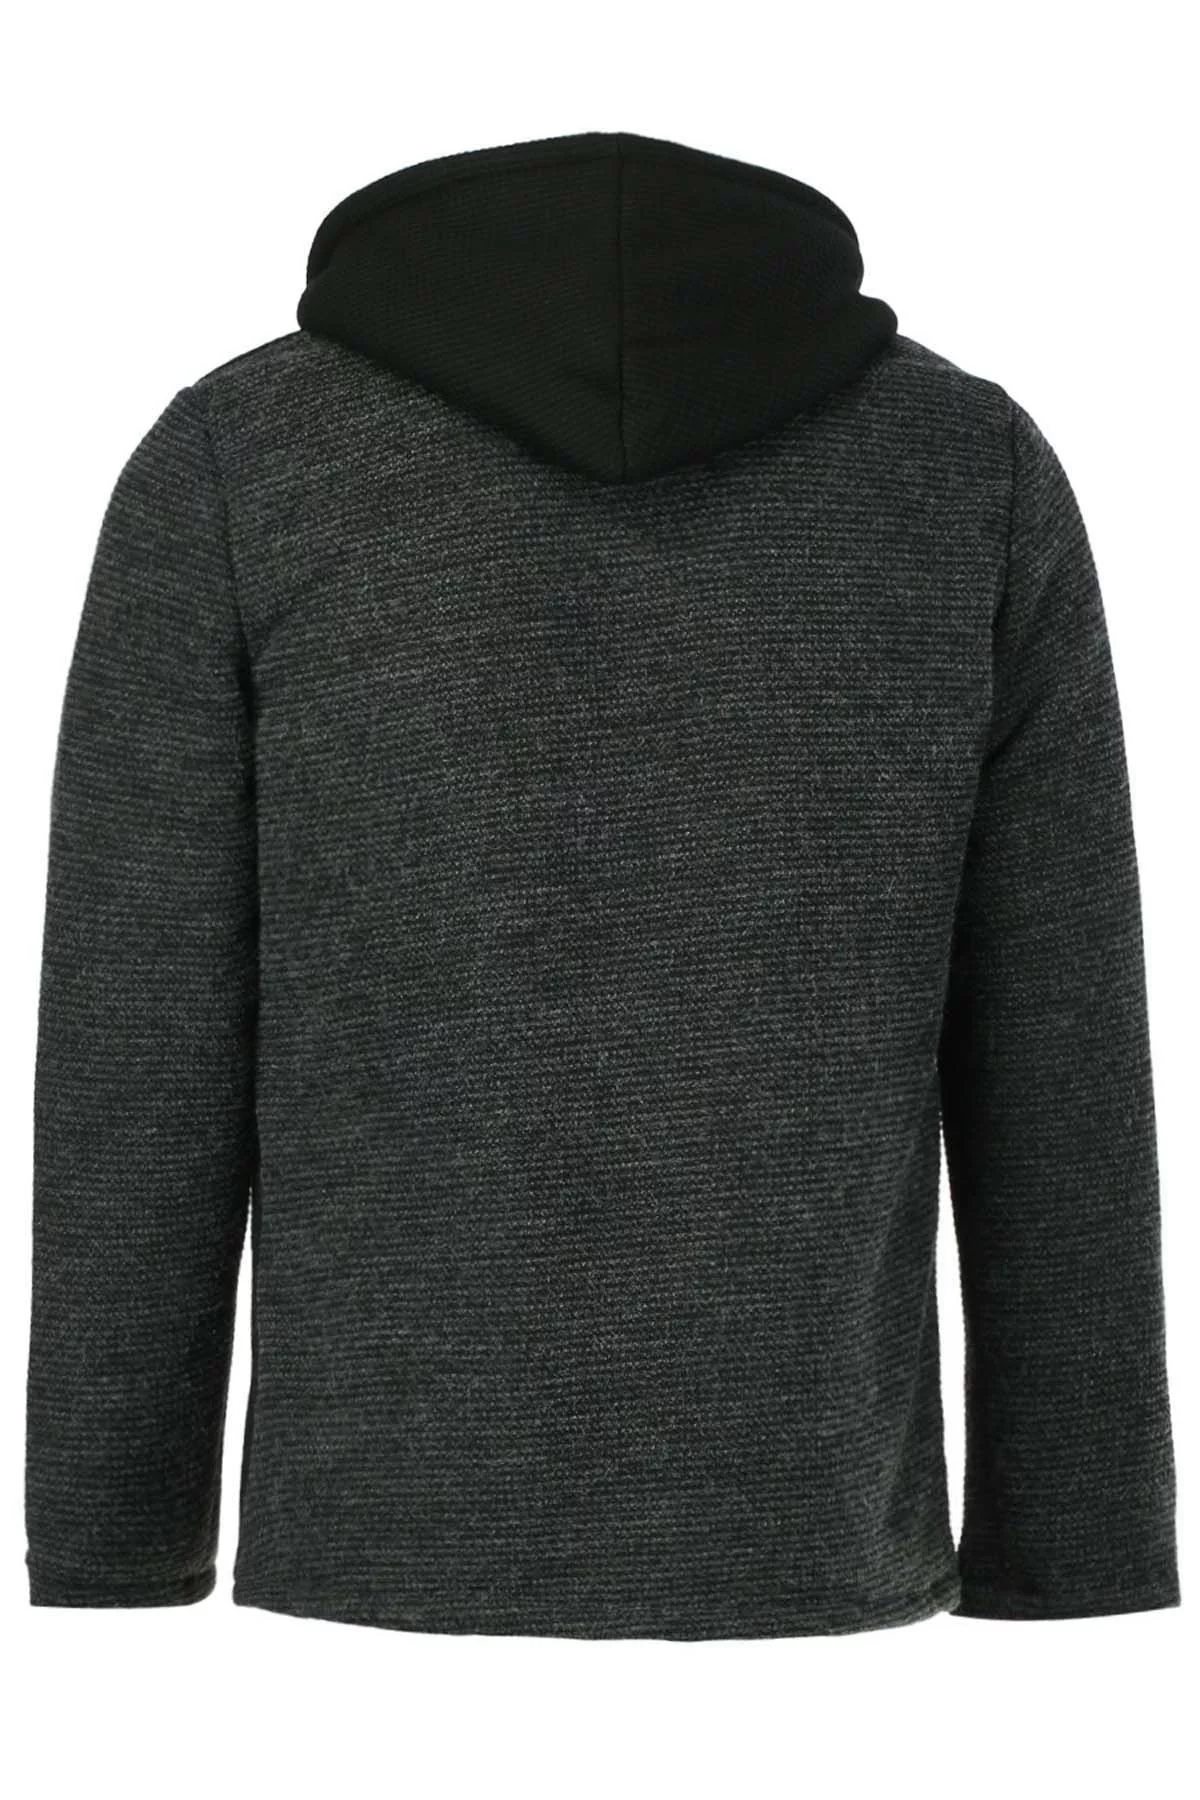 Slimming Hooded Stereo Pocket PU Leather Spliced Hit Color Long Sleeves Woolen Blend Jacket For Men Black